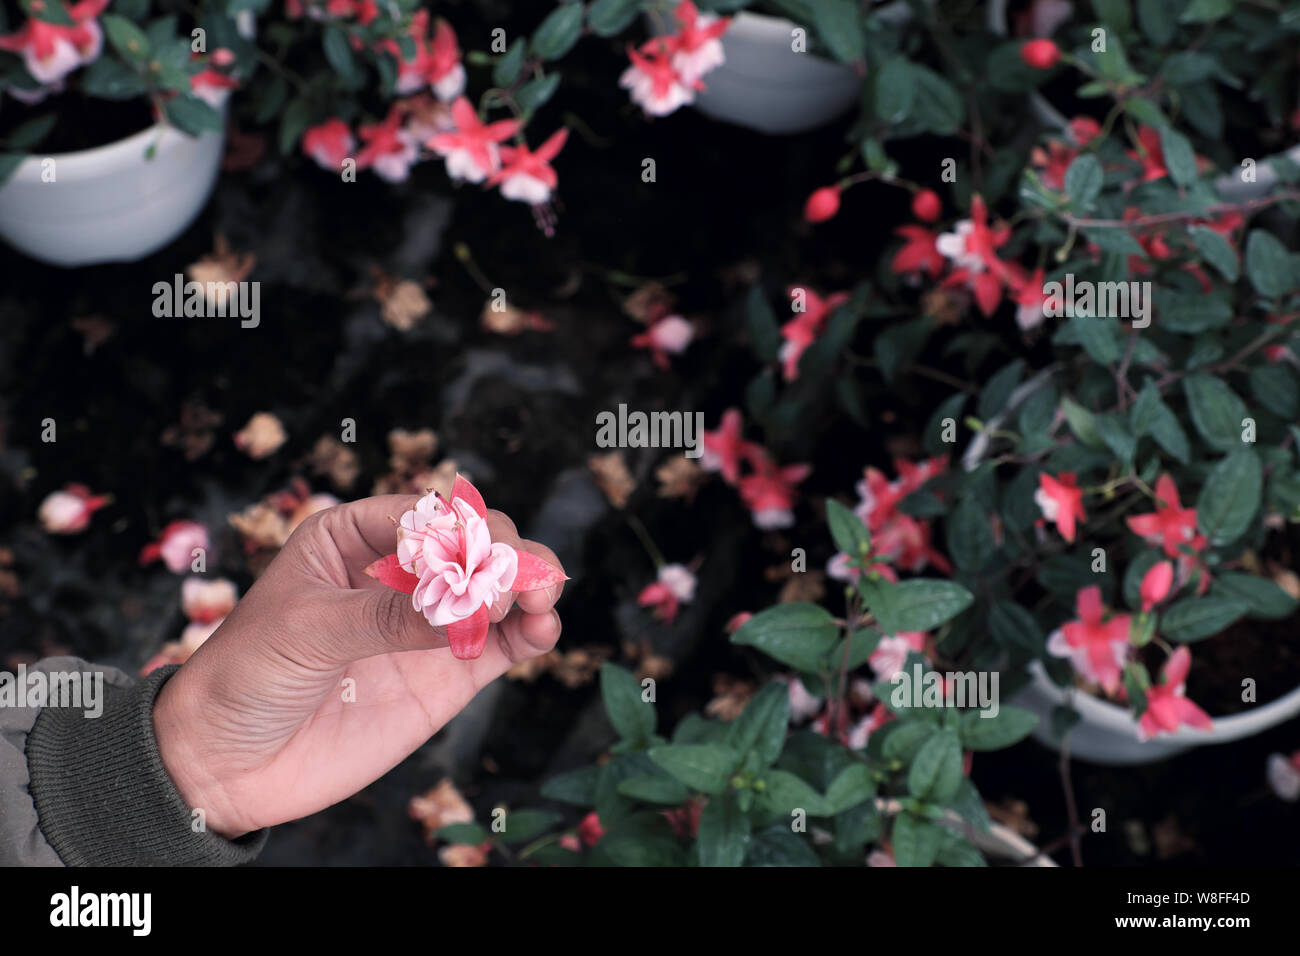 Frau Hand abholen Rosa winterharte Fuchsie Blume, die von Lady's Ohr fallen Tropfen Werk im Ziergarten Stockfoto